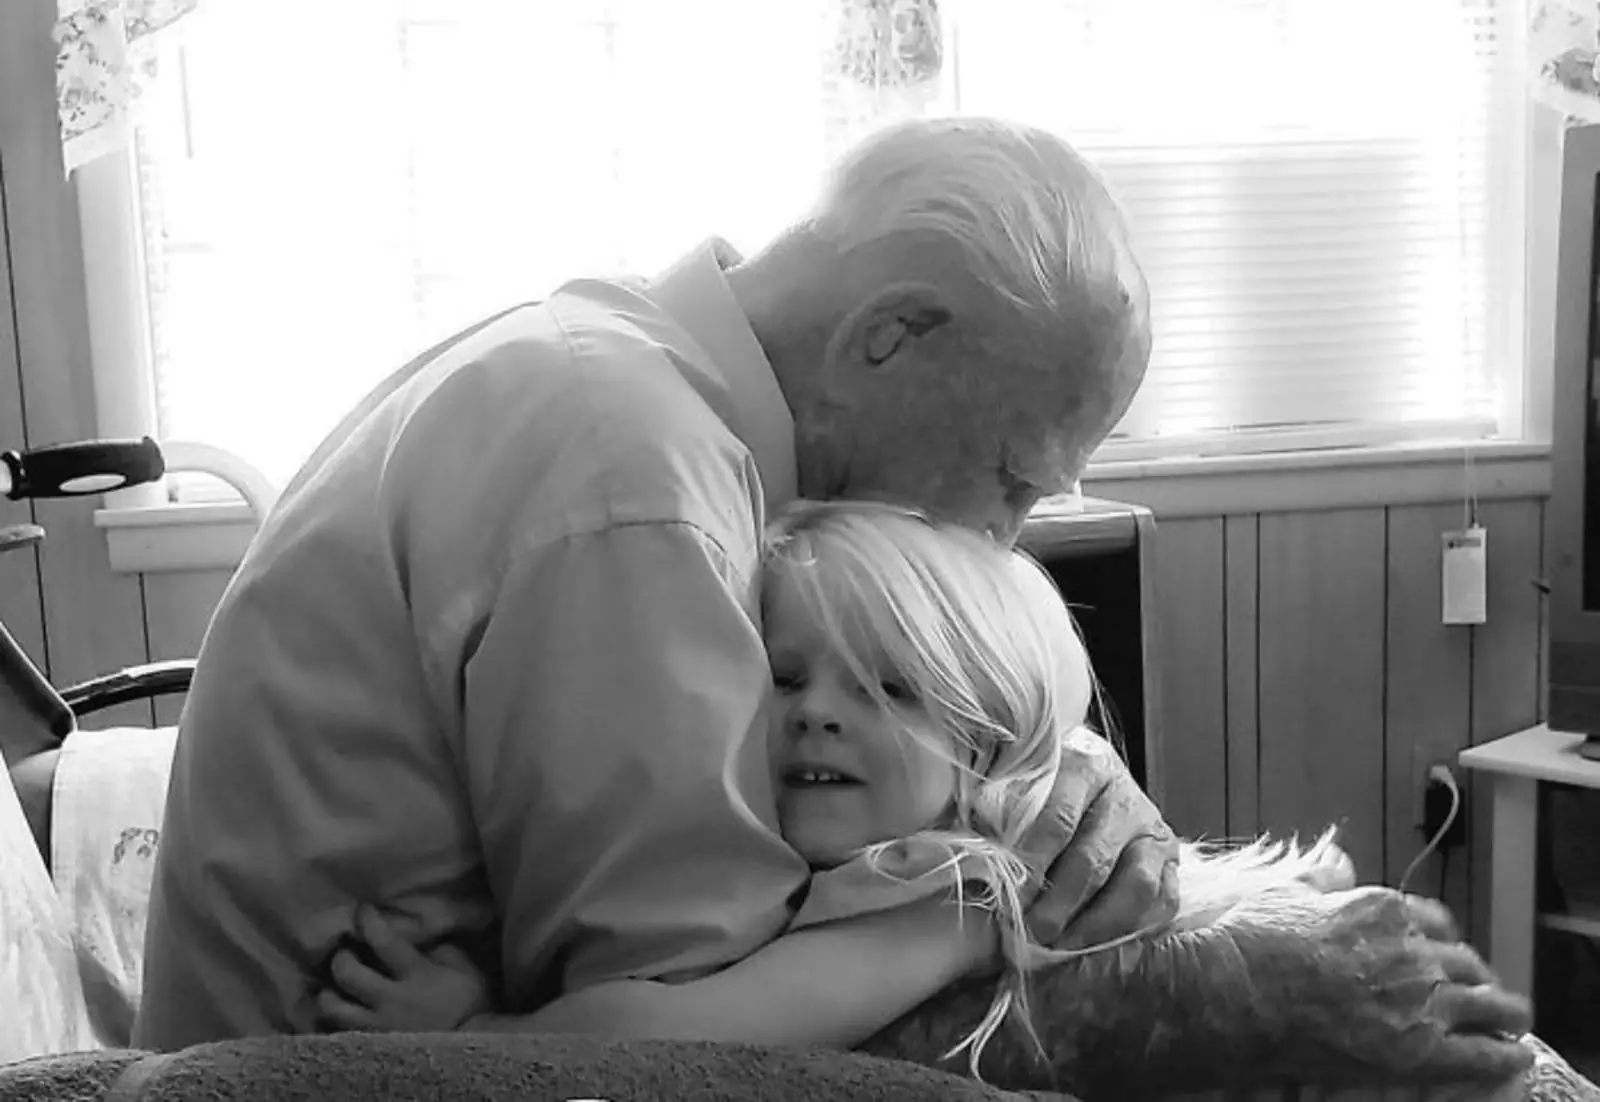 "100 лет друг от друга. Мой дедушка в свой 103-й день рождения с моей 3-летней дочерью. Картинка бесценна для меня".